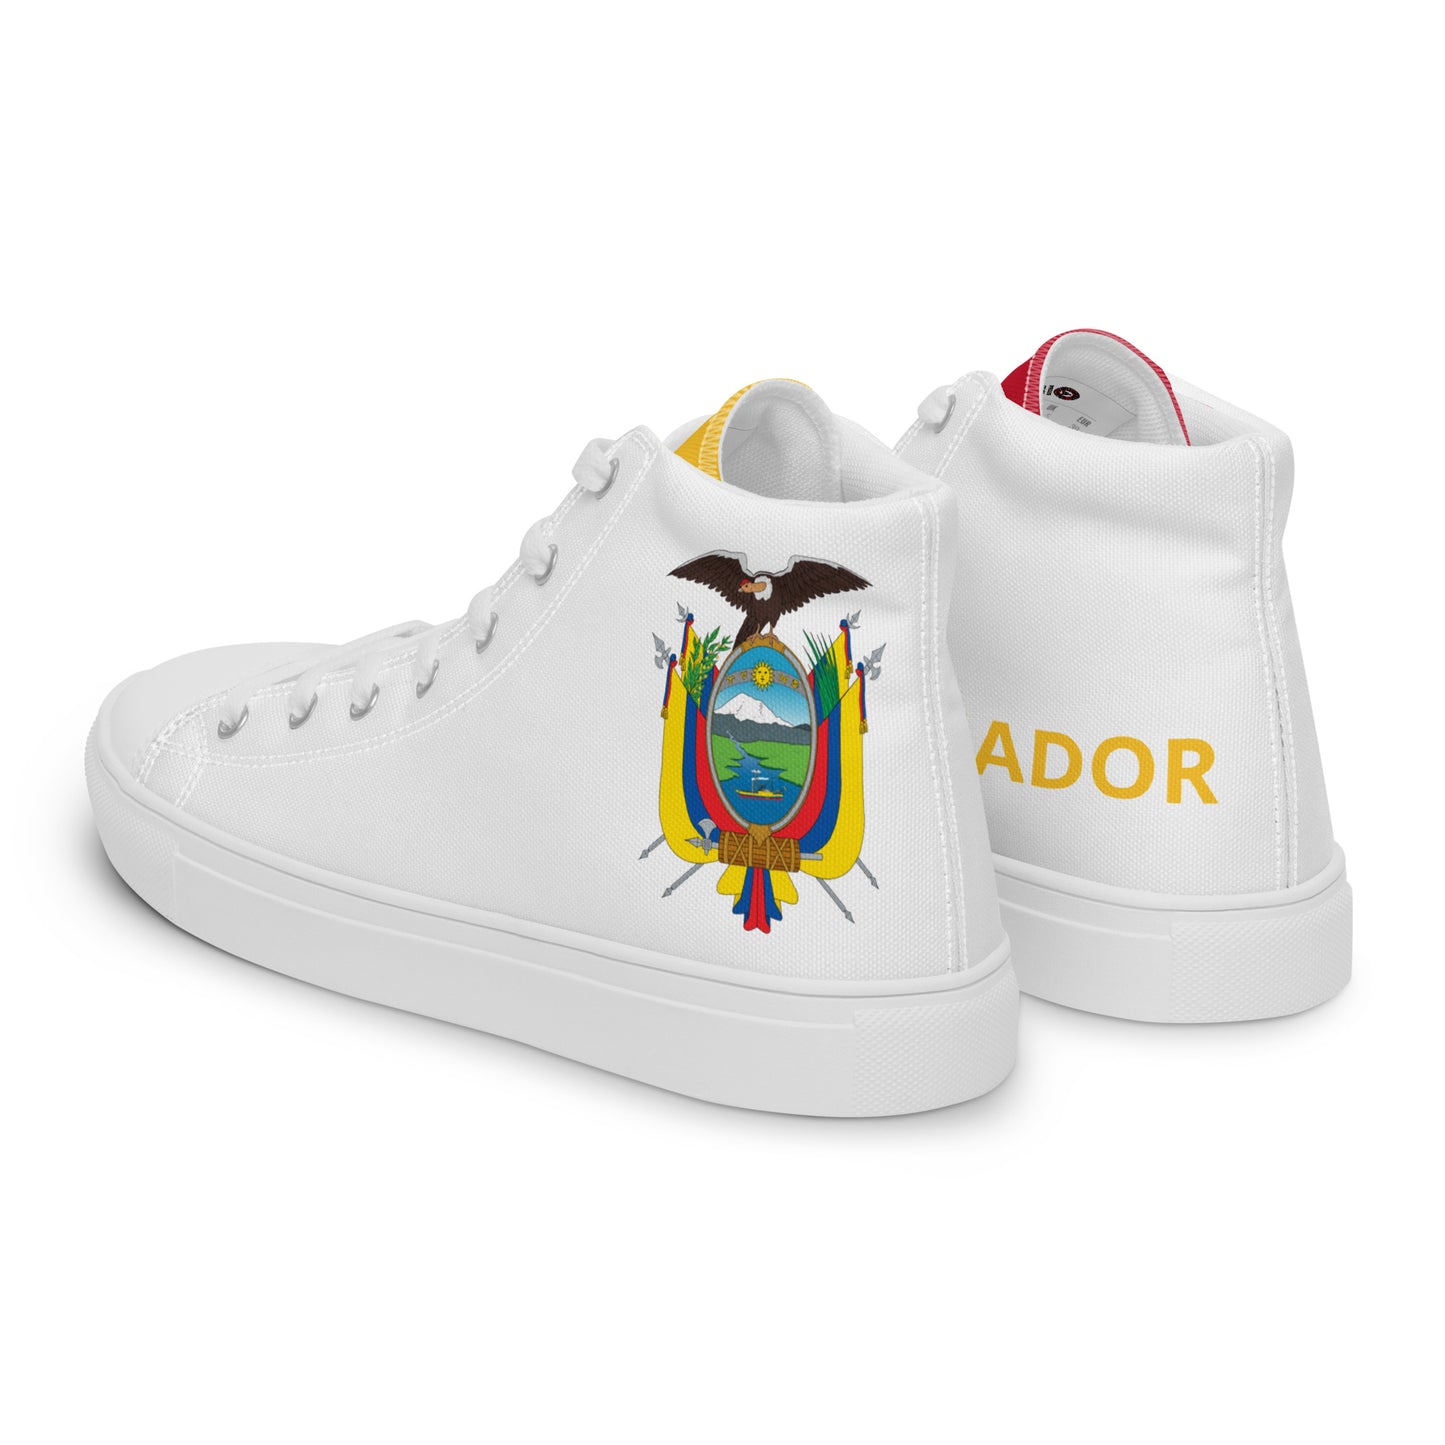 Ecuador - Men - White - High top shoes